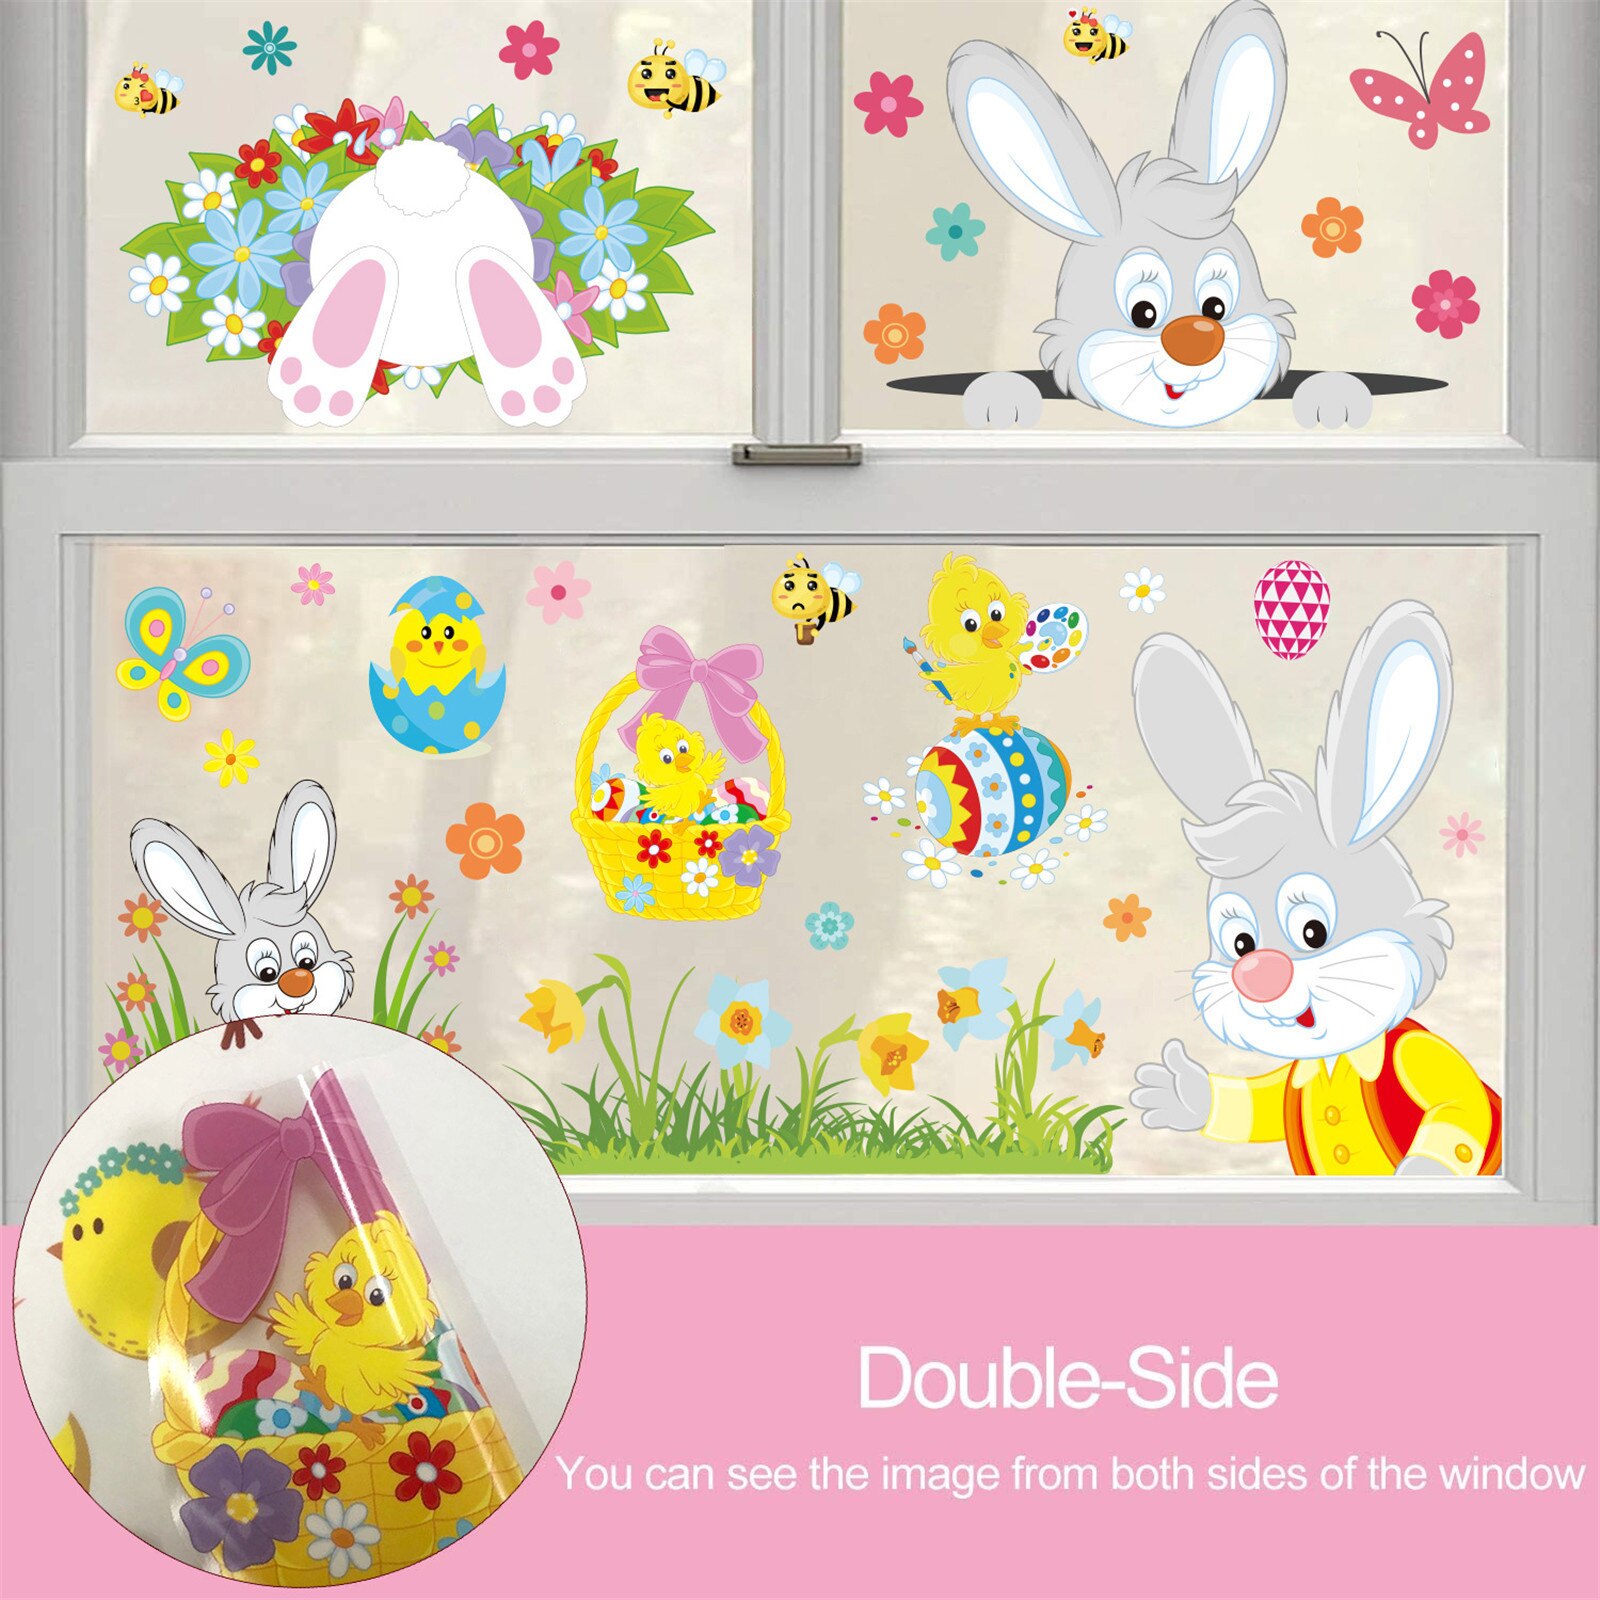 25 # Pasen Cartoon Kinderen Bunny Chick Sticker Muur Sticker Raamsticker Cartoon Home Decor Voor Kinderkamer Muurstickers